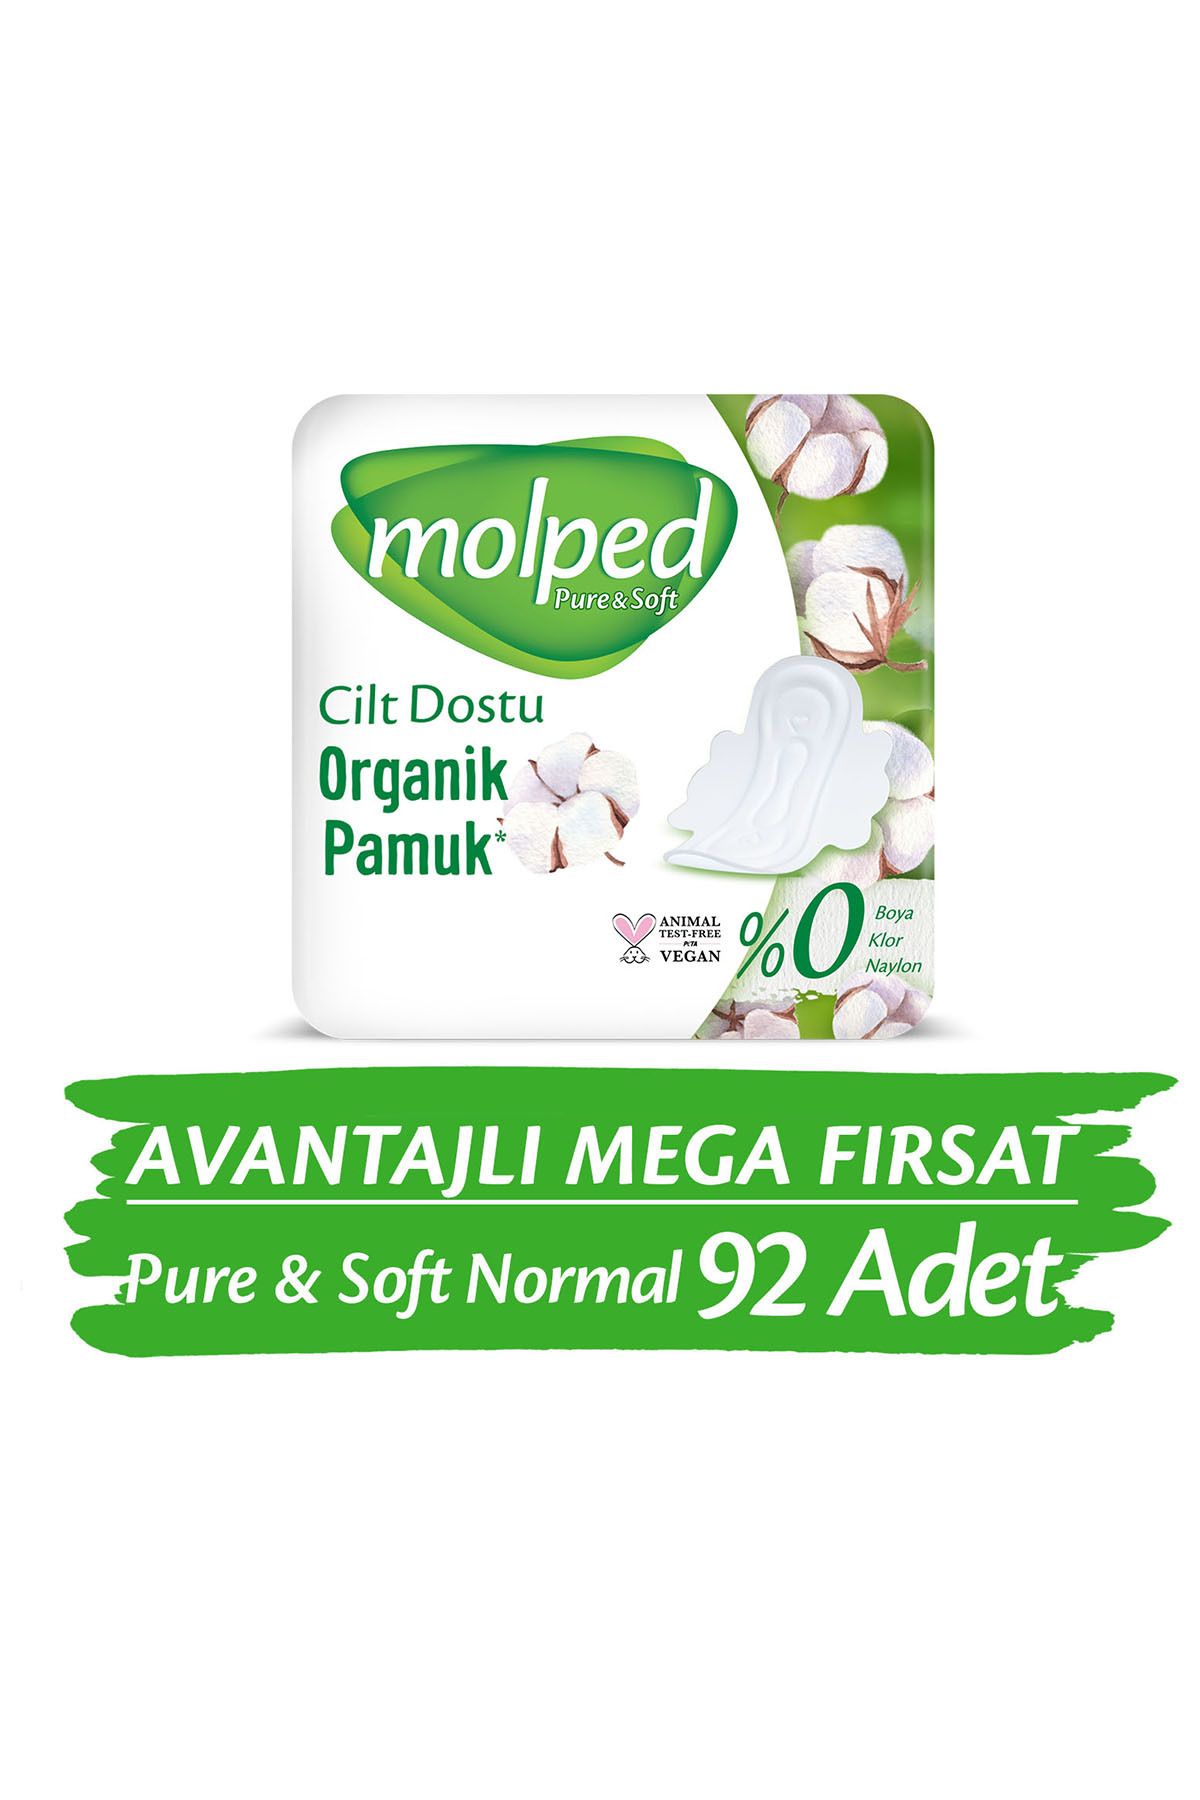 Molped Pure Soft Normal Avantajlı Mega Fırsat Paketi 46 Lı X 2 Adet